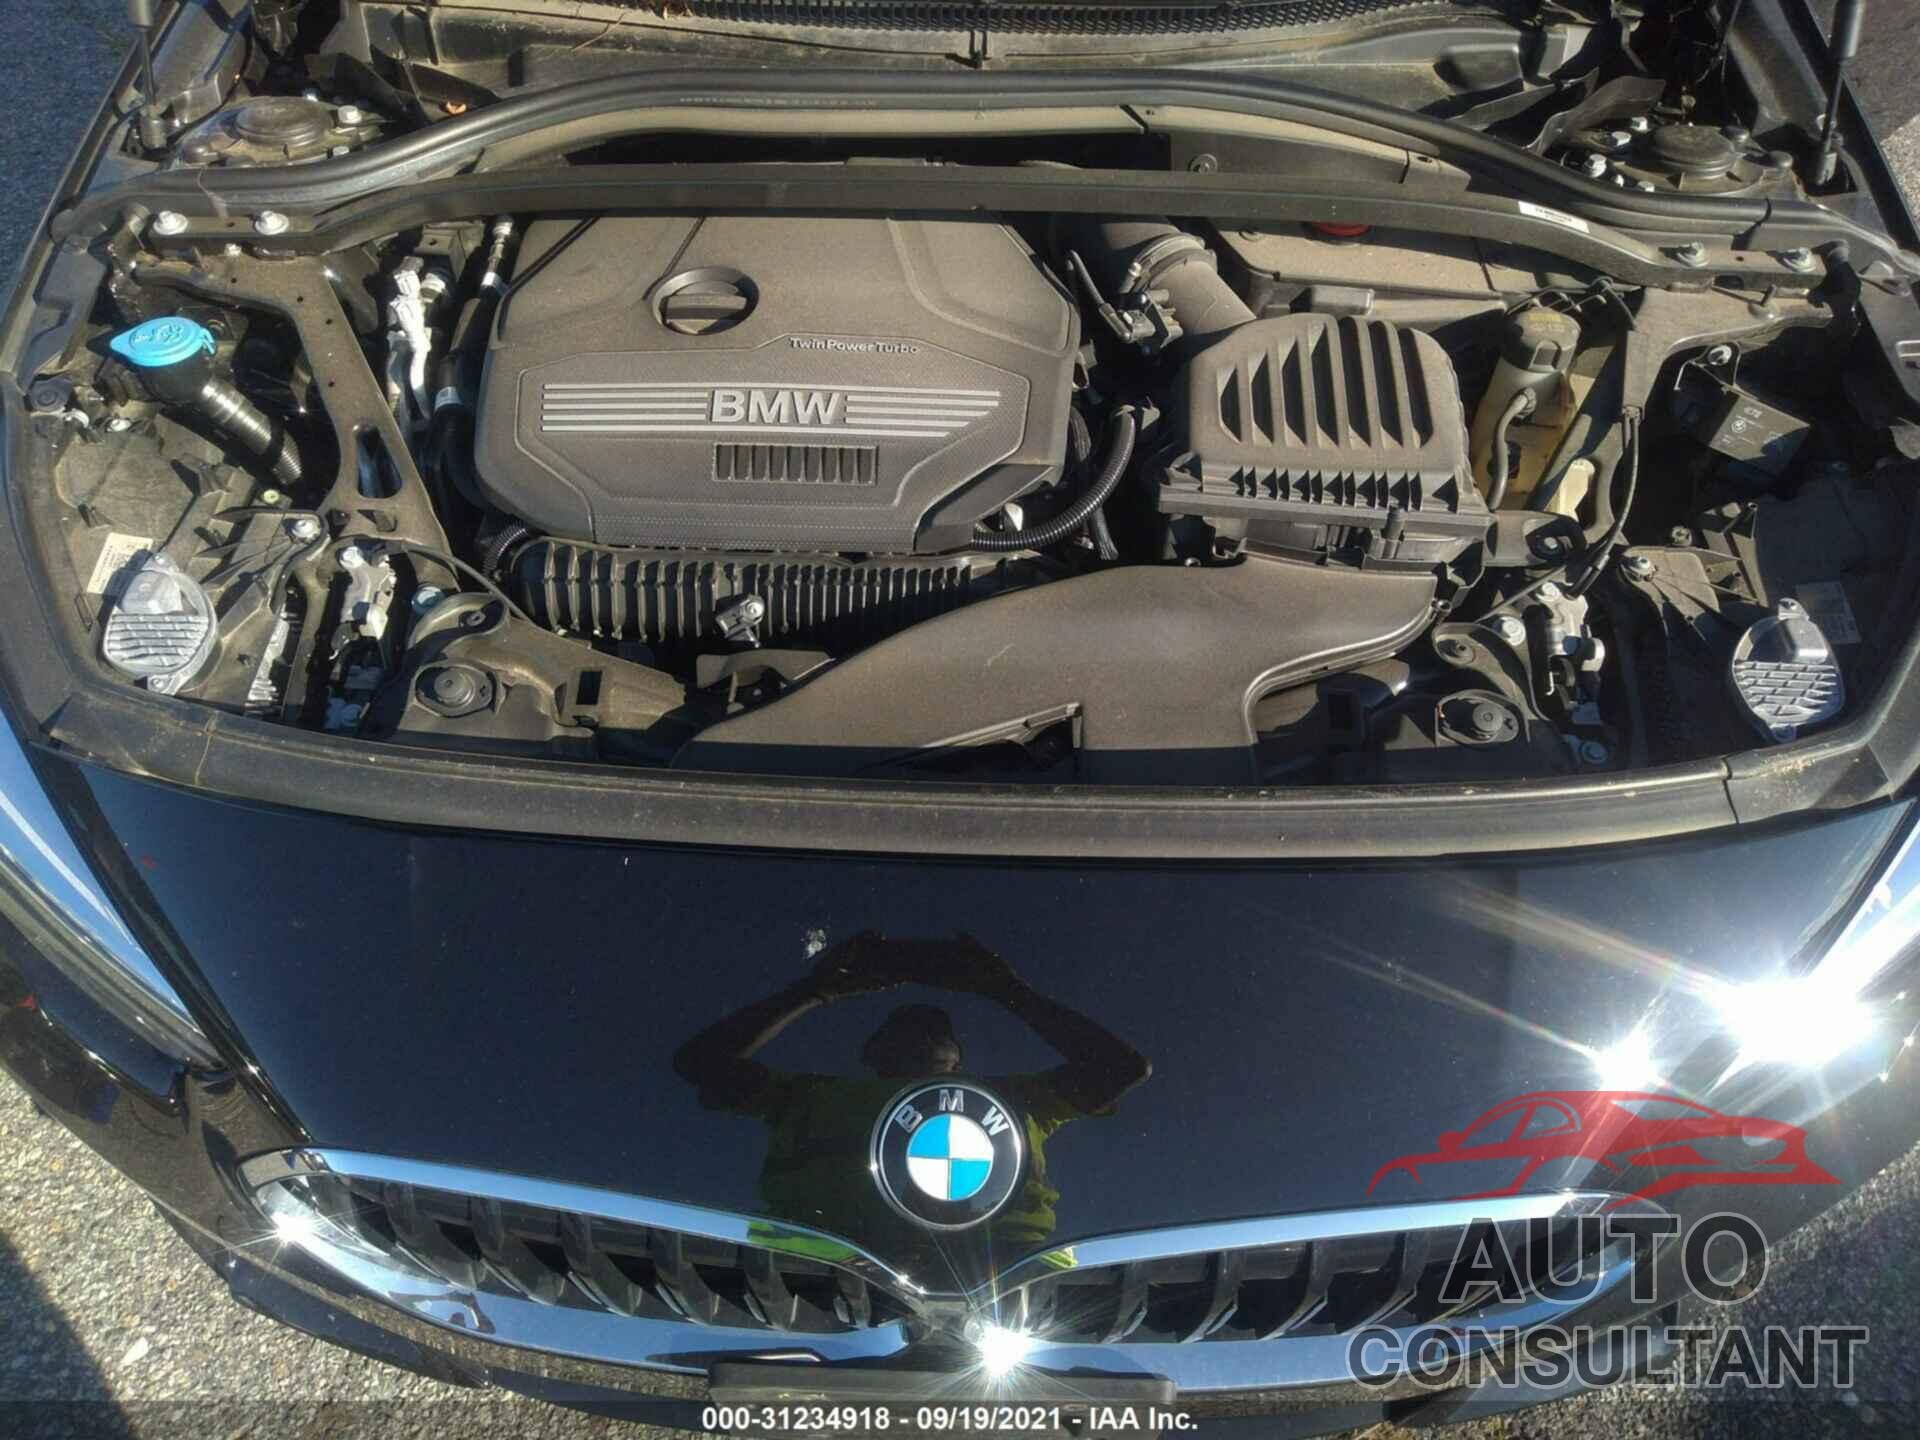 BMW 2 SERIES 2020 - WBA73AK02L7F88830